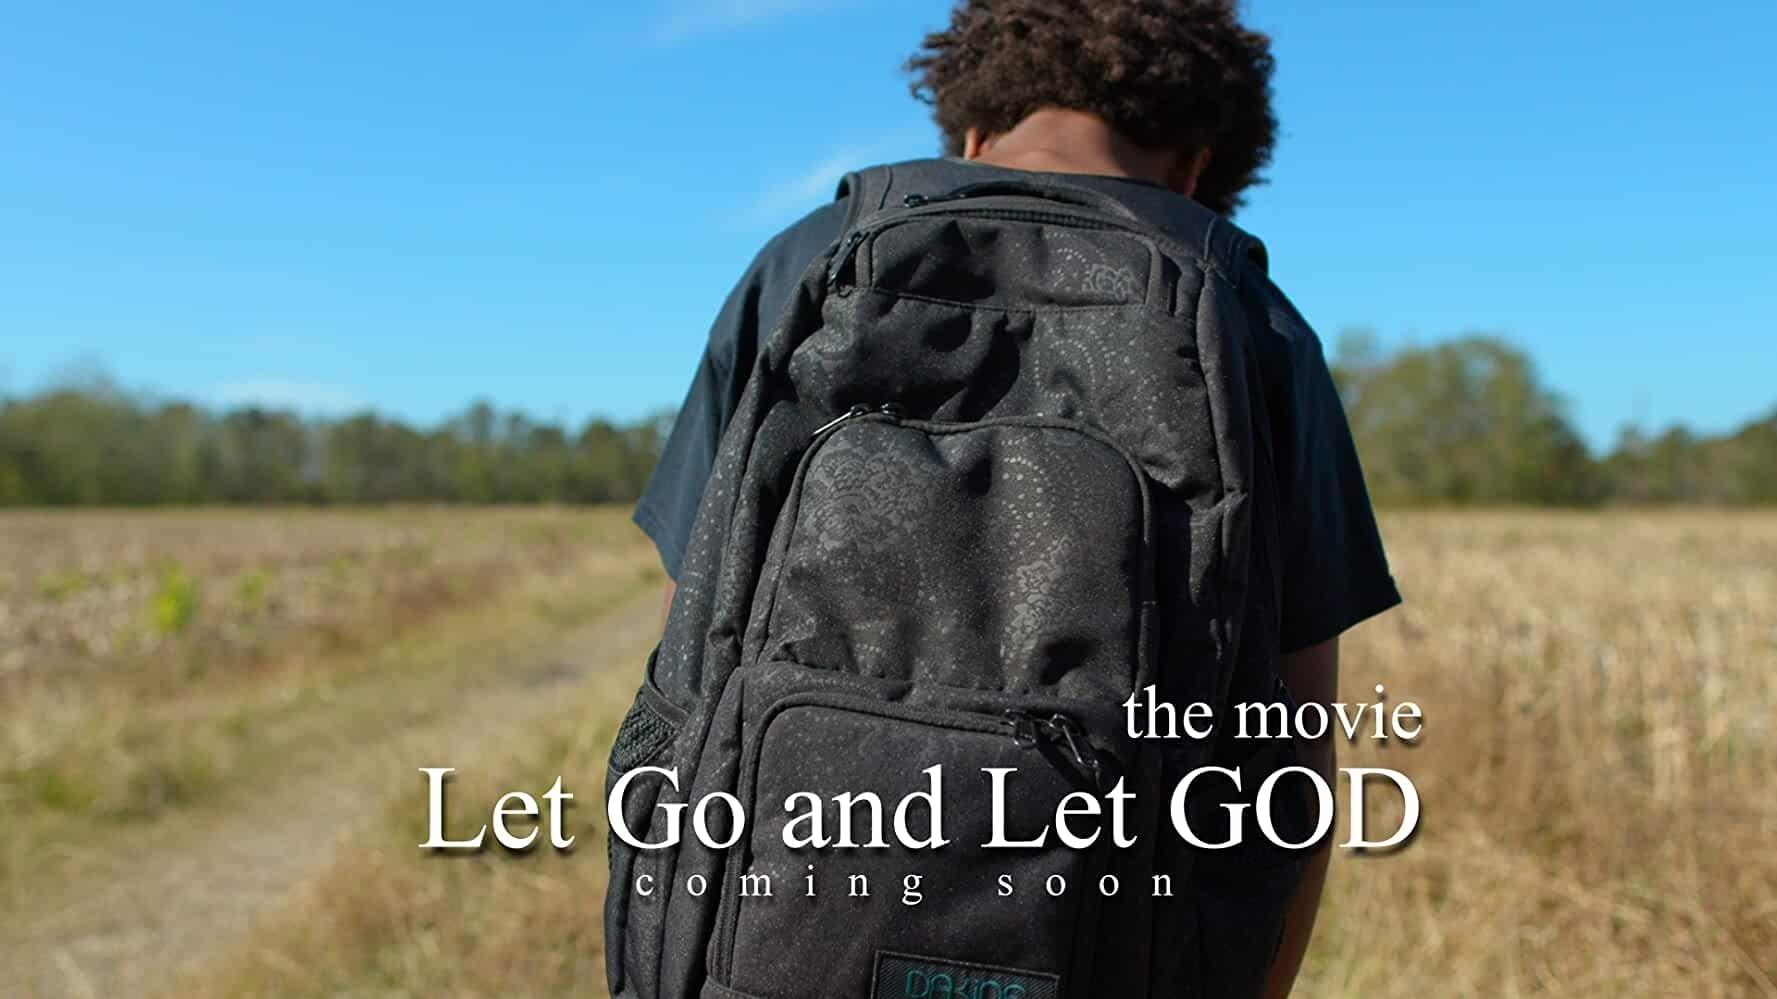 Let Go and Let God backdrop